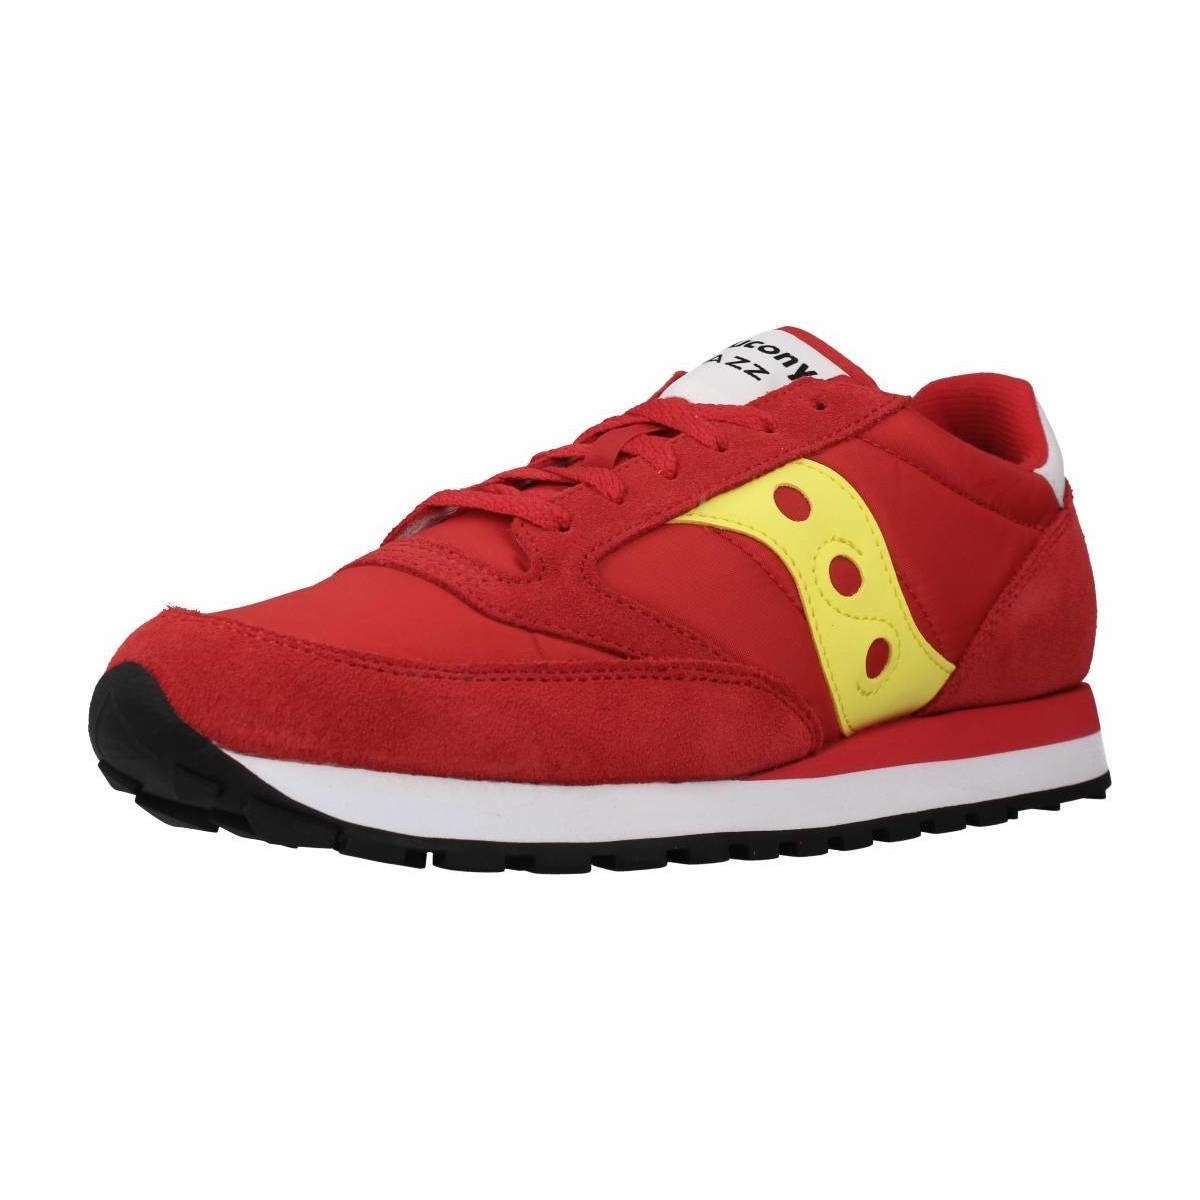 Παπούτσια Άνδρας Sneakers Saucony JAZZ ORIGINAL Red